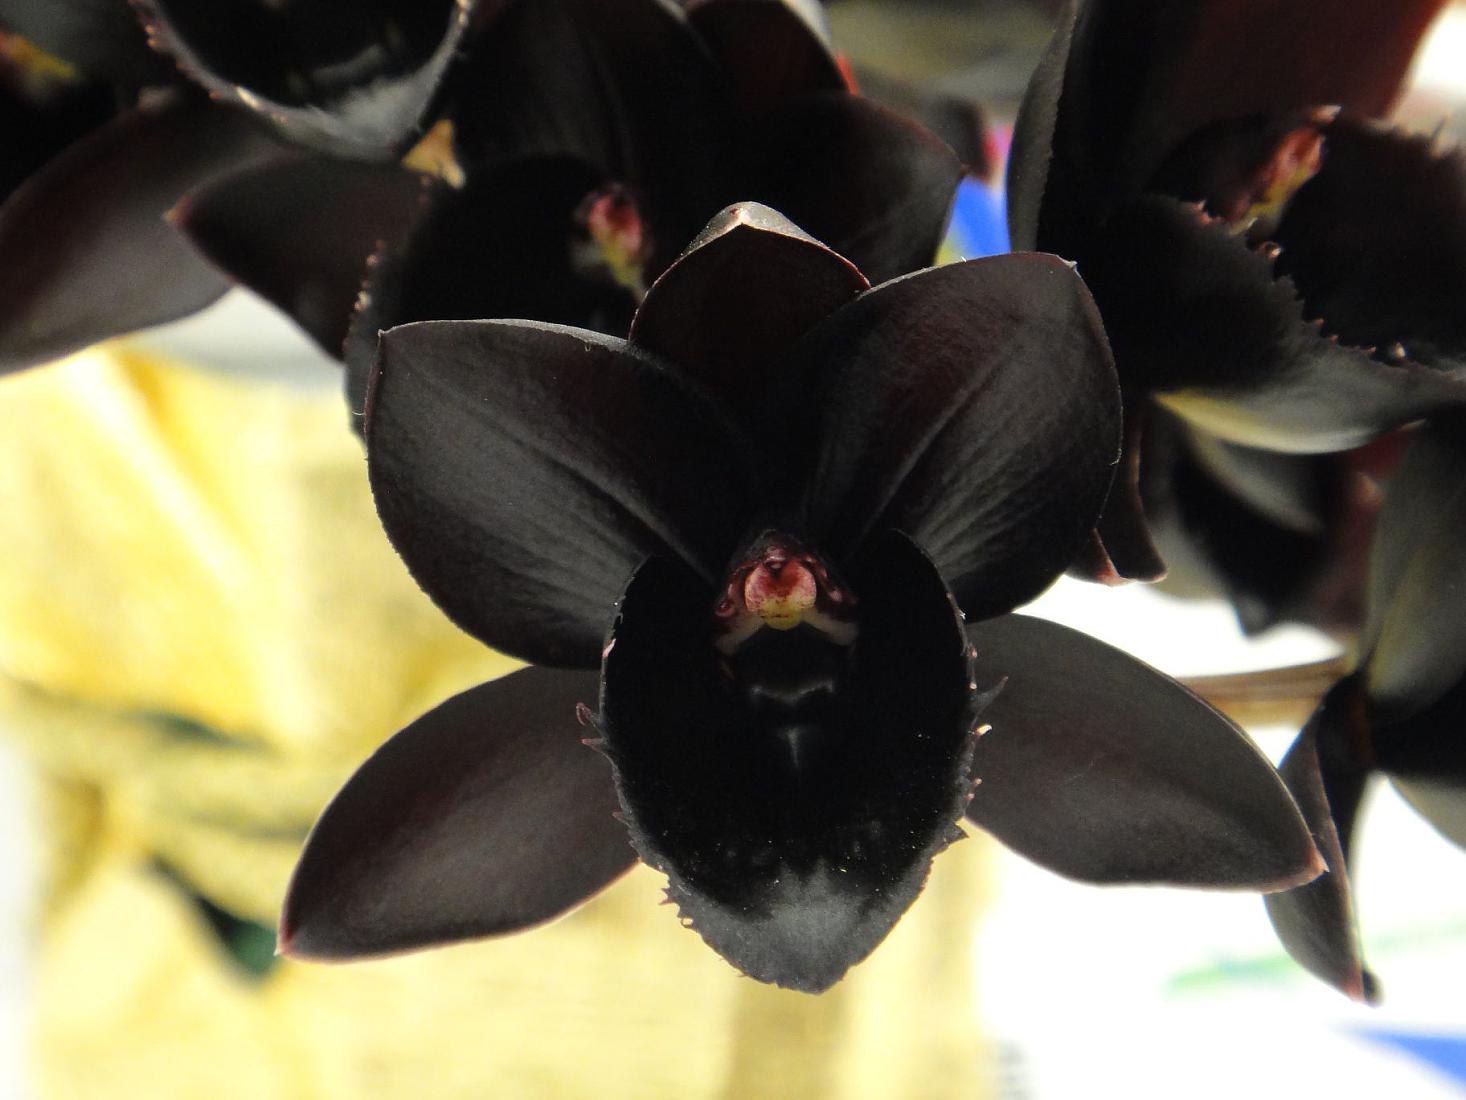 Phalaenopsis - een zwarte orchideebloem, zoals deze op de foto lijkt